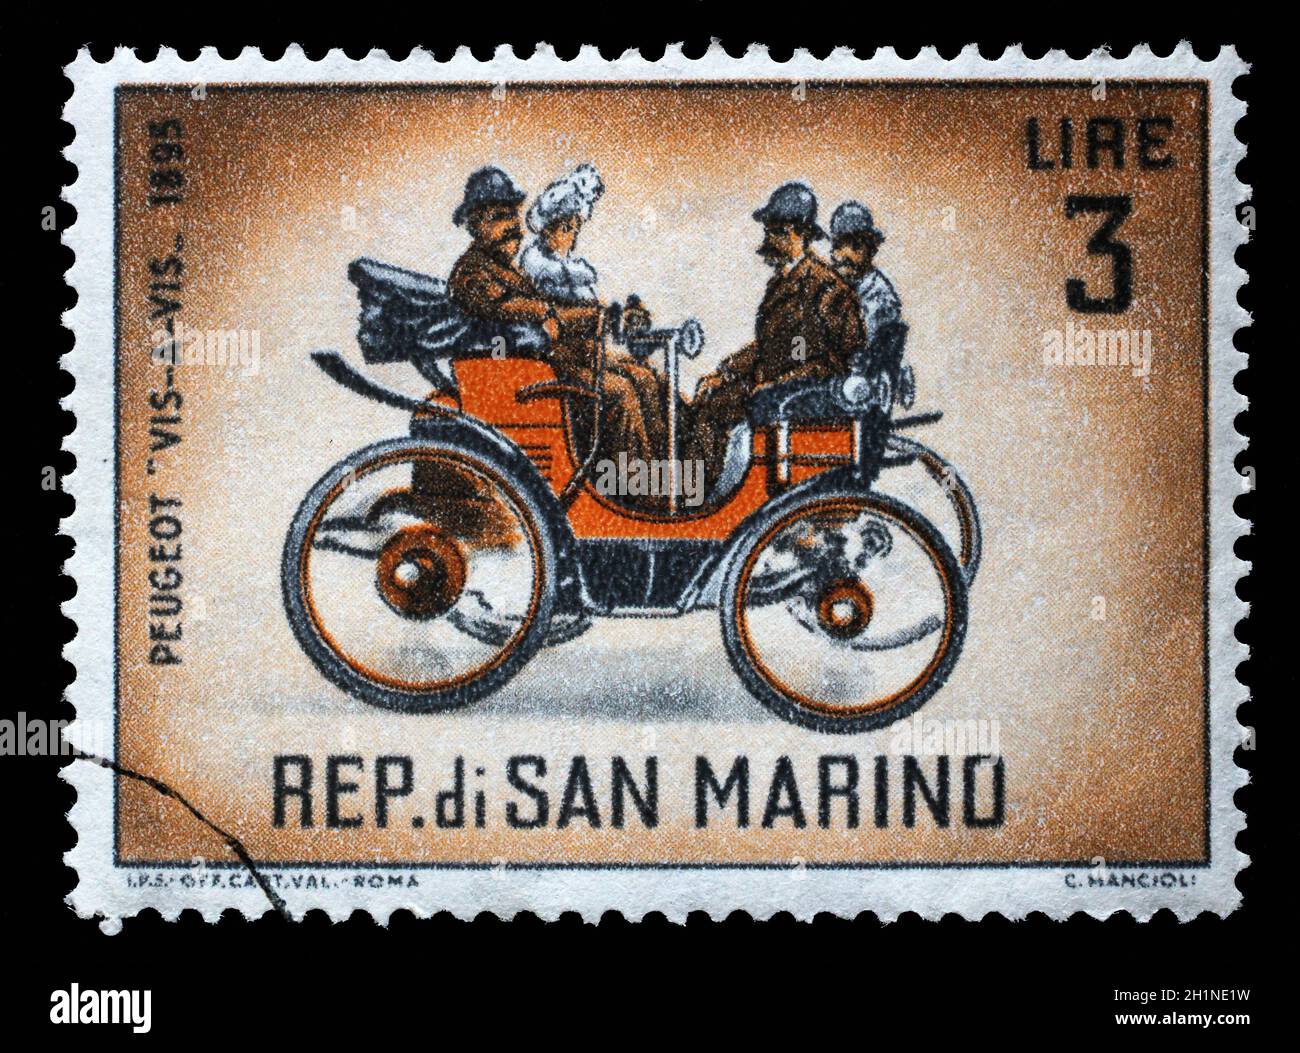 Stempel in San Marino ausgegebenen zeigt Peugeot "Vis-a-vis" (1895), klassische Automobile Serie, ca. 1962. Stockfoto